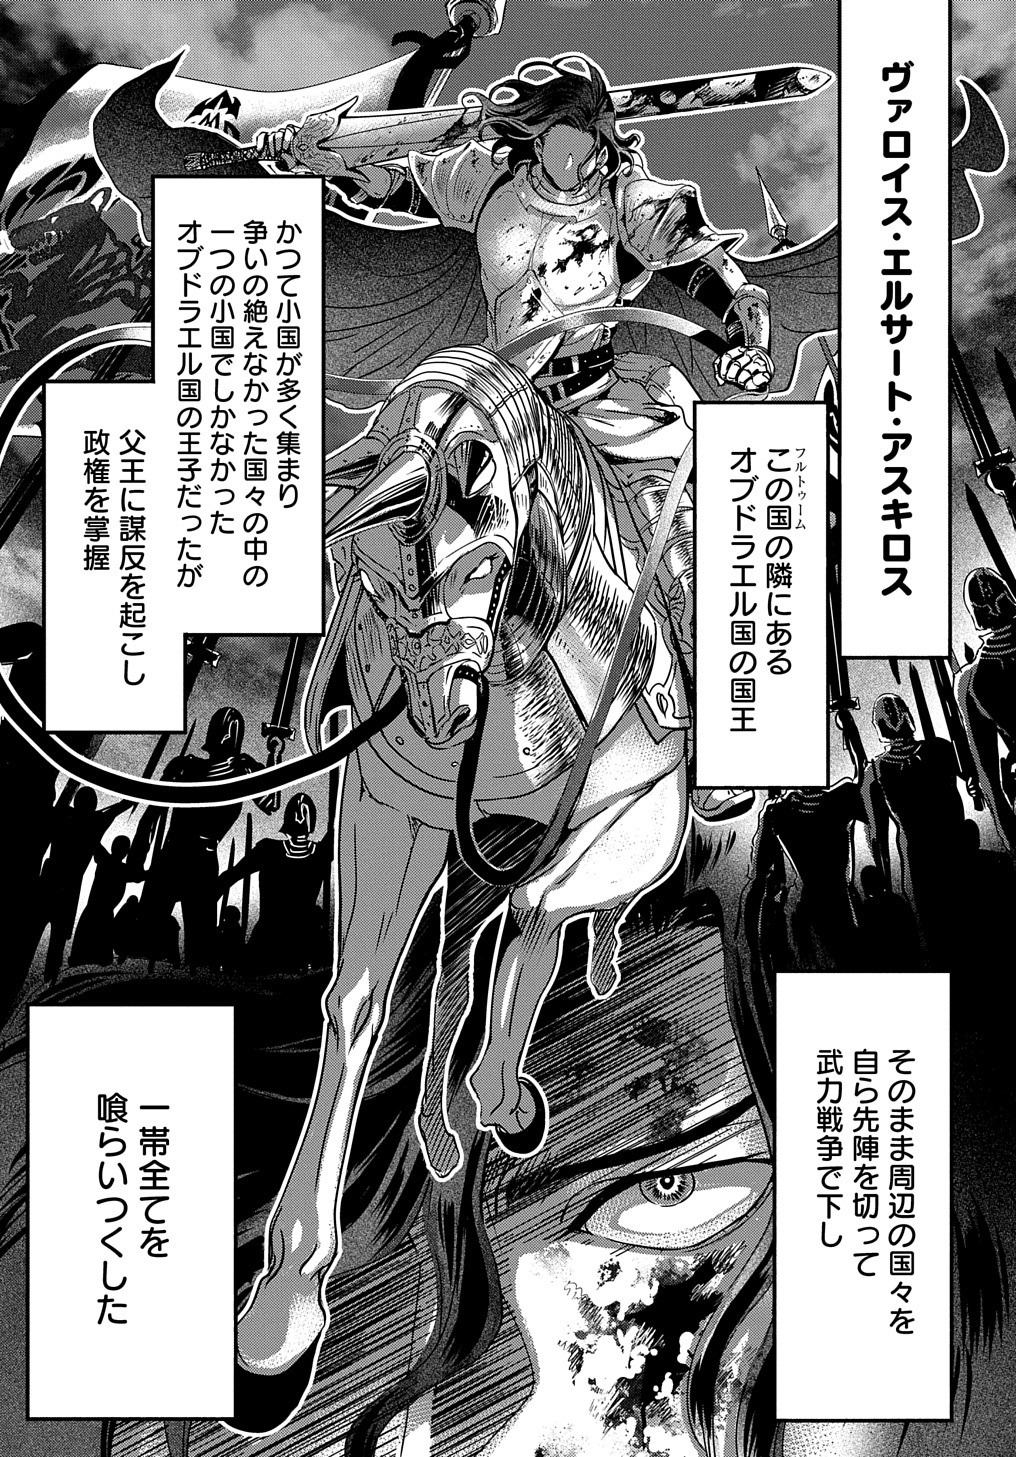 Konyakusha no Uwaki Genba wo Michatta no de Hajimari no Kane ga narimashita - Chapter 8 - Page 1